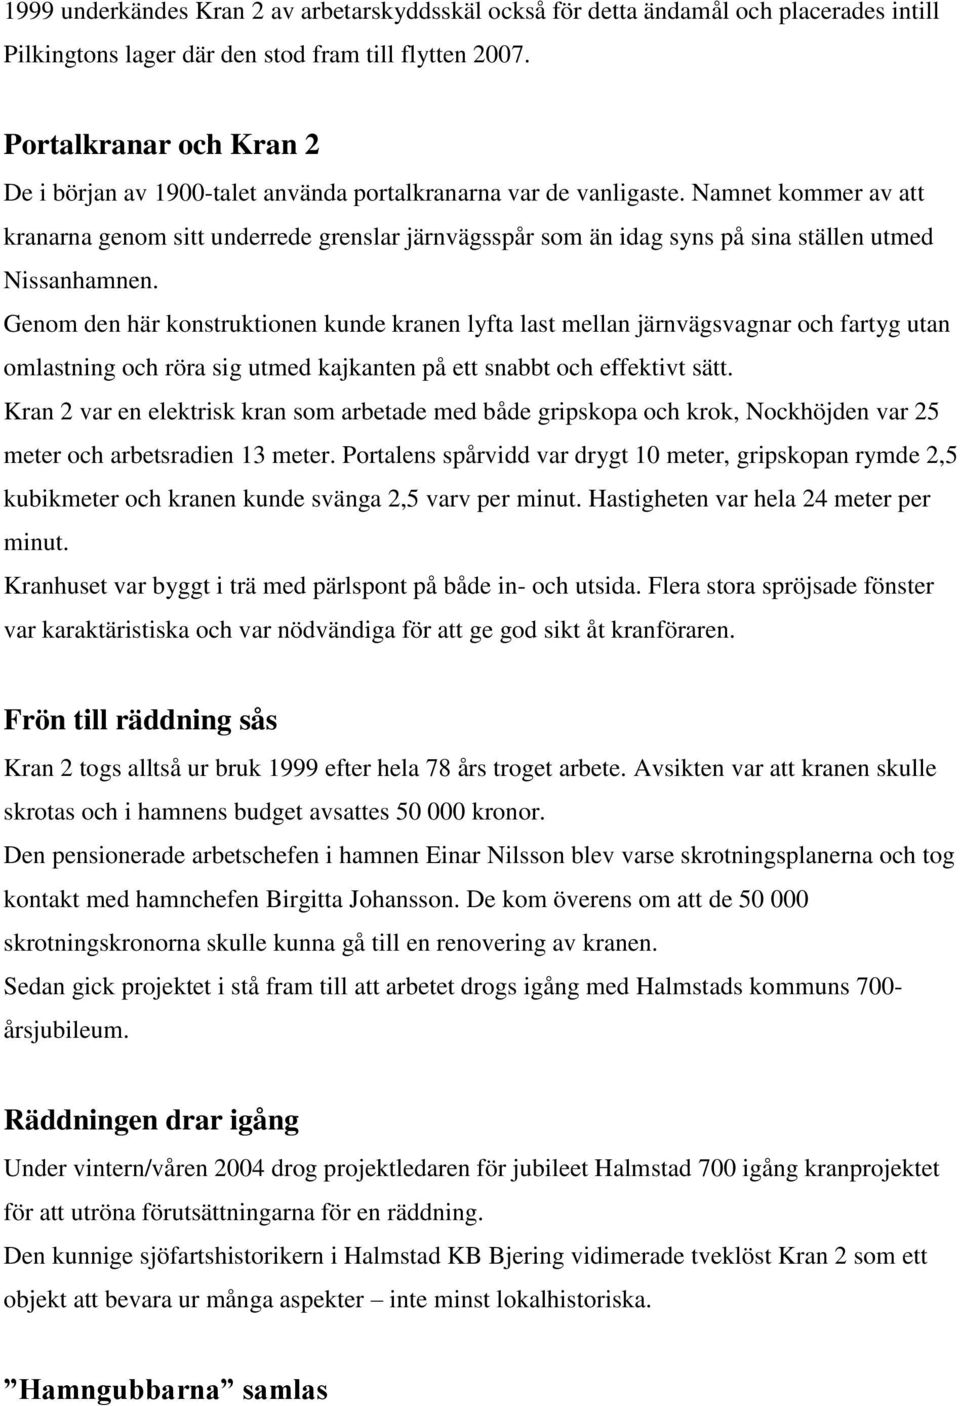 Kran 2 i Halmstads hamn - PDF Gratis nedladdning